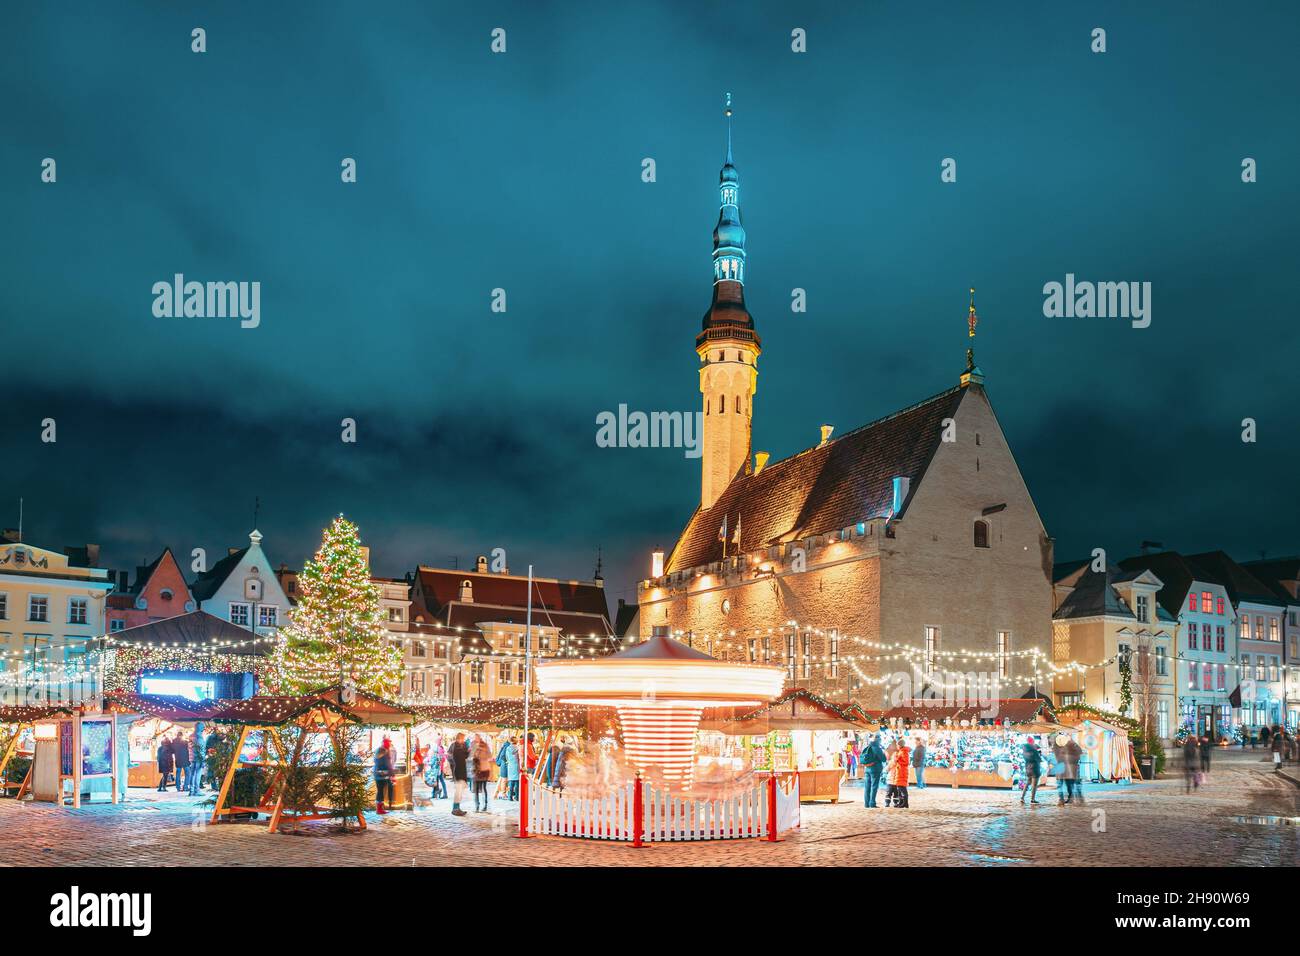 Tallin, Estonia. Mercado de Navidad tradicional y carrusel en la Plaza del Ayuntamiento. Árbol de Navidad y casas comerciales con venta de regalos de Navidad, Foto de stock